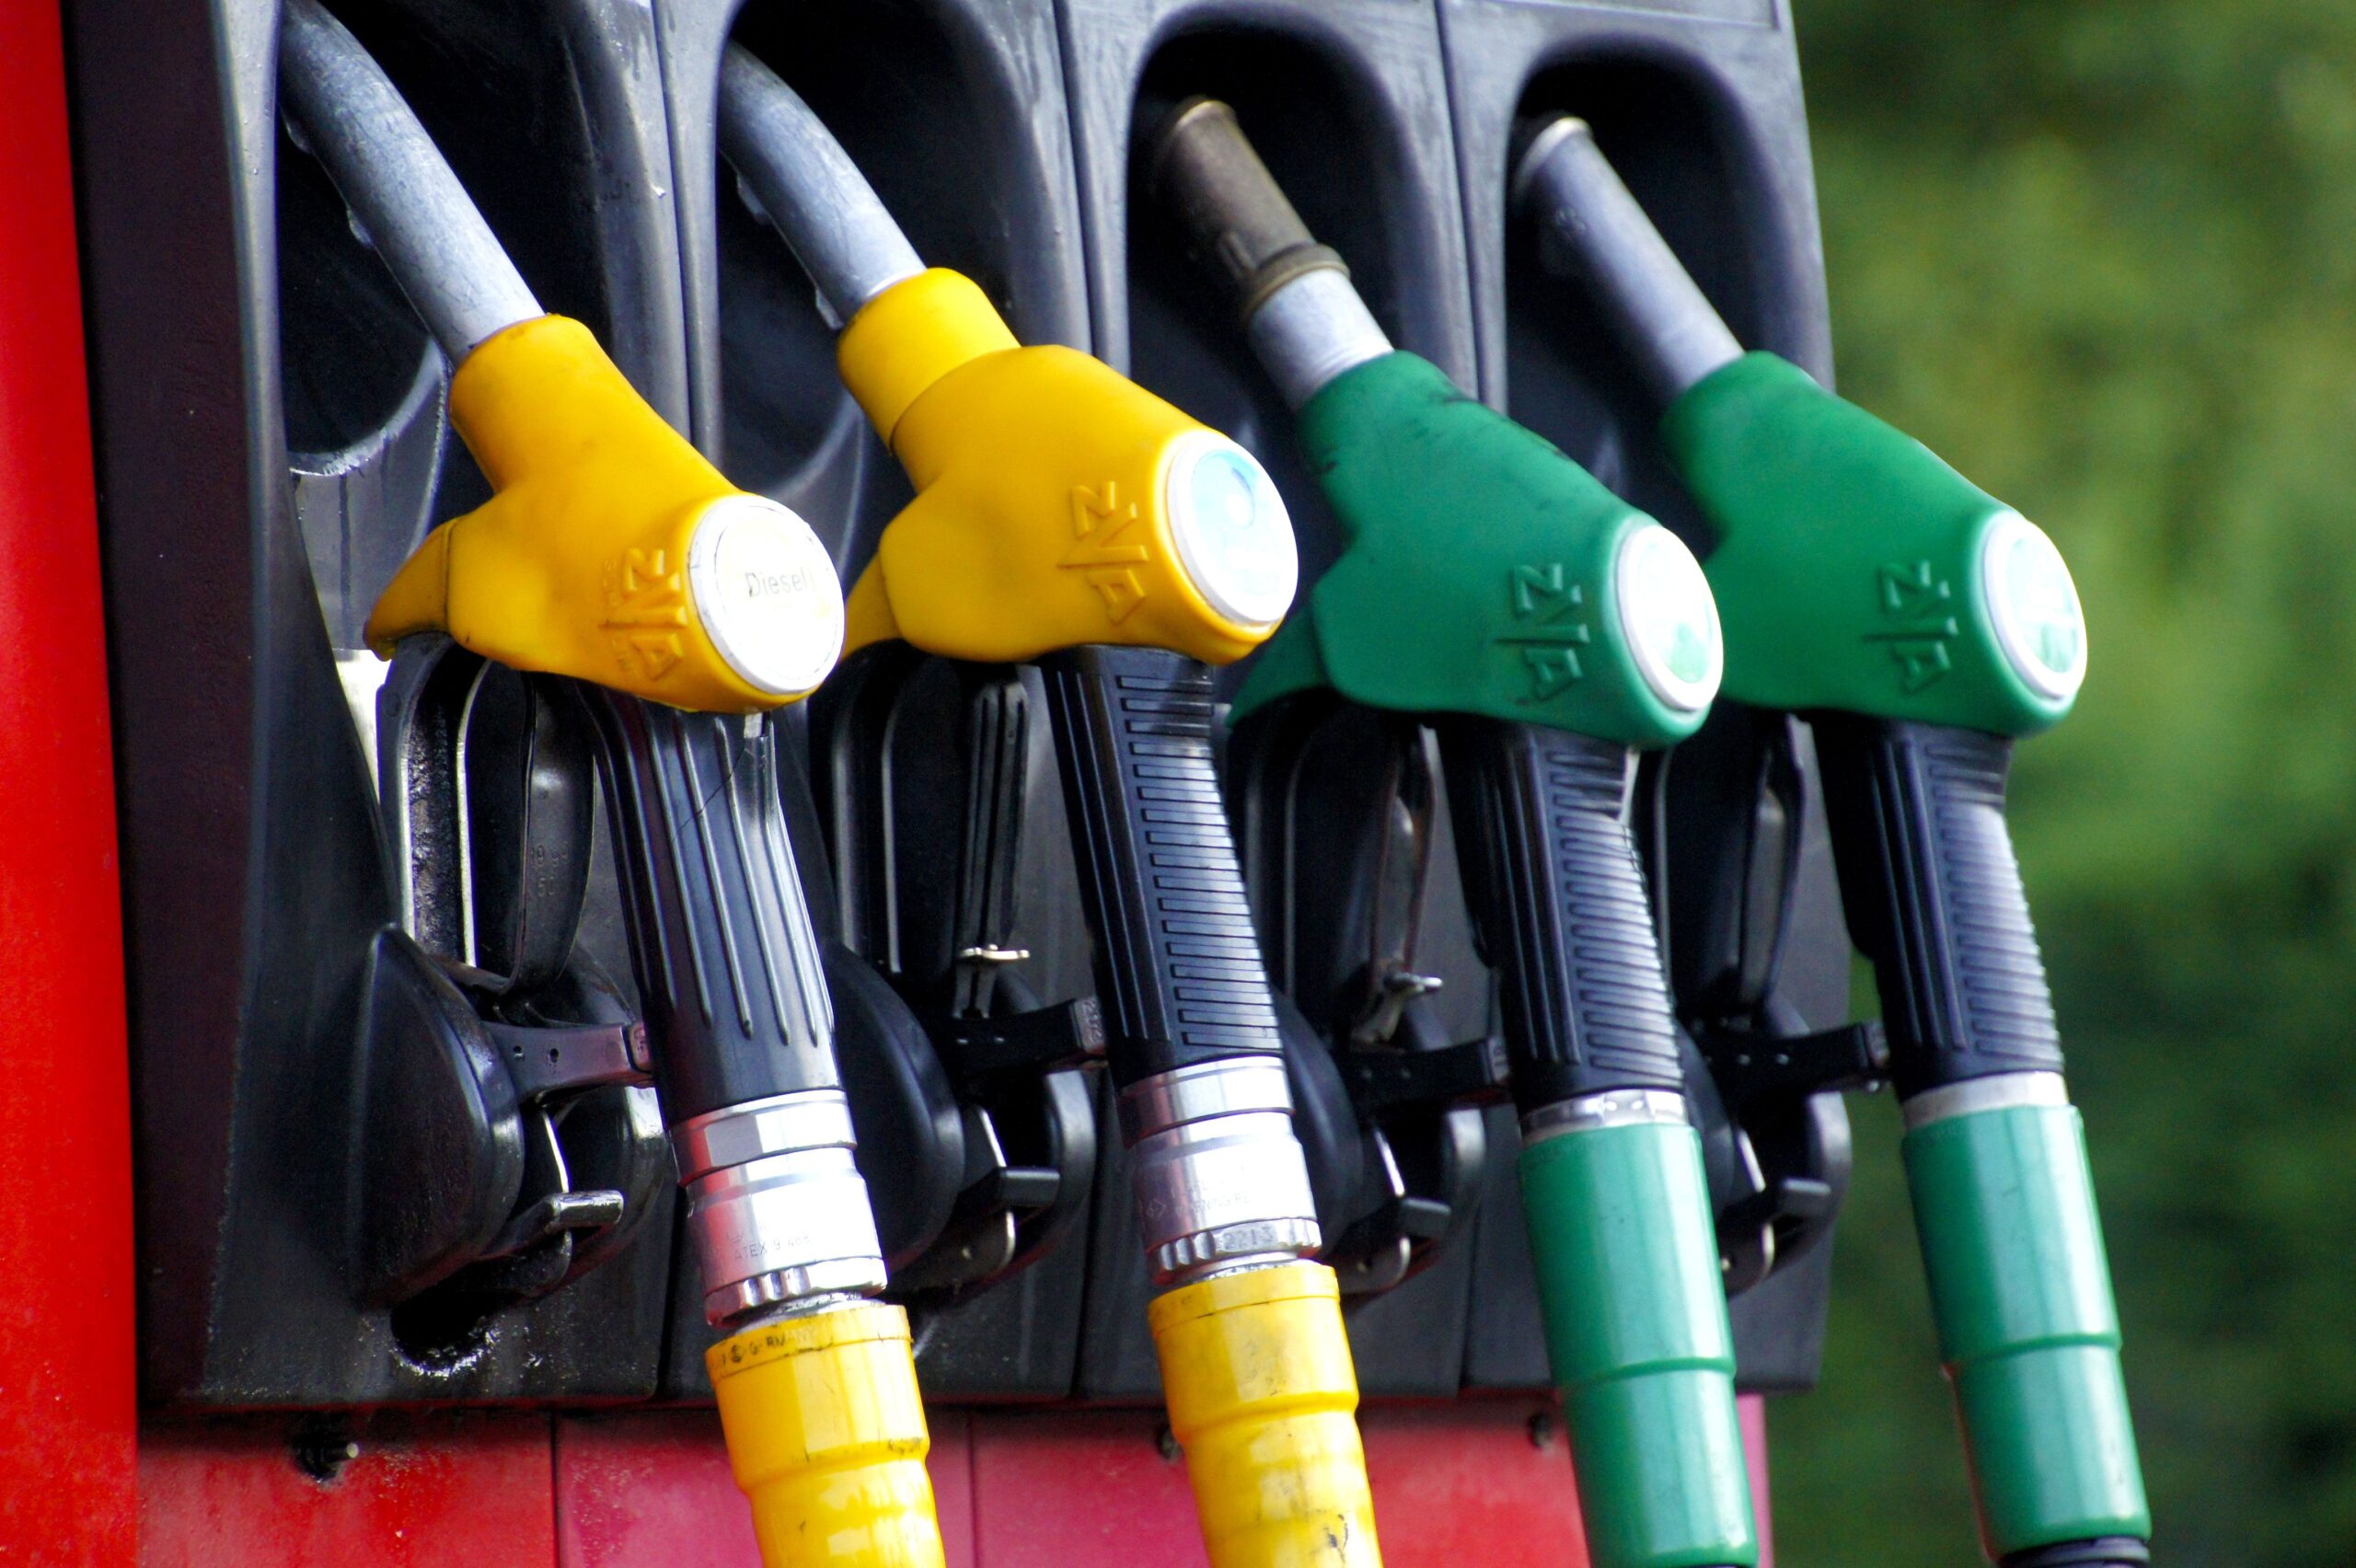 Analiza cen paliw po obniżce akcyzy. Czy to miało sens?